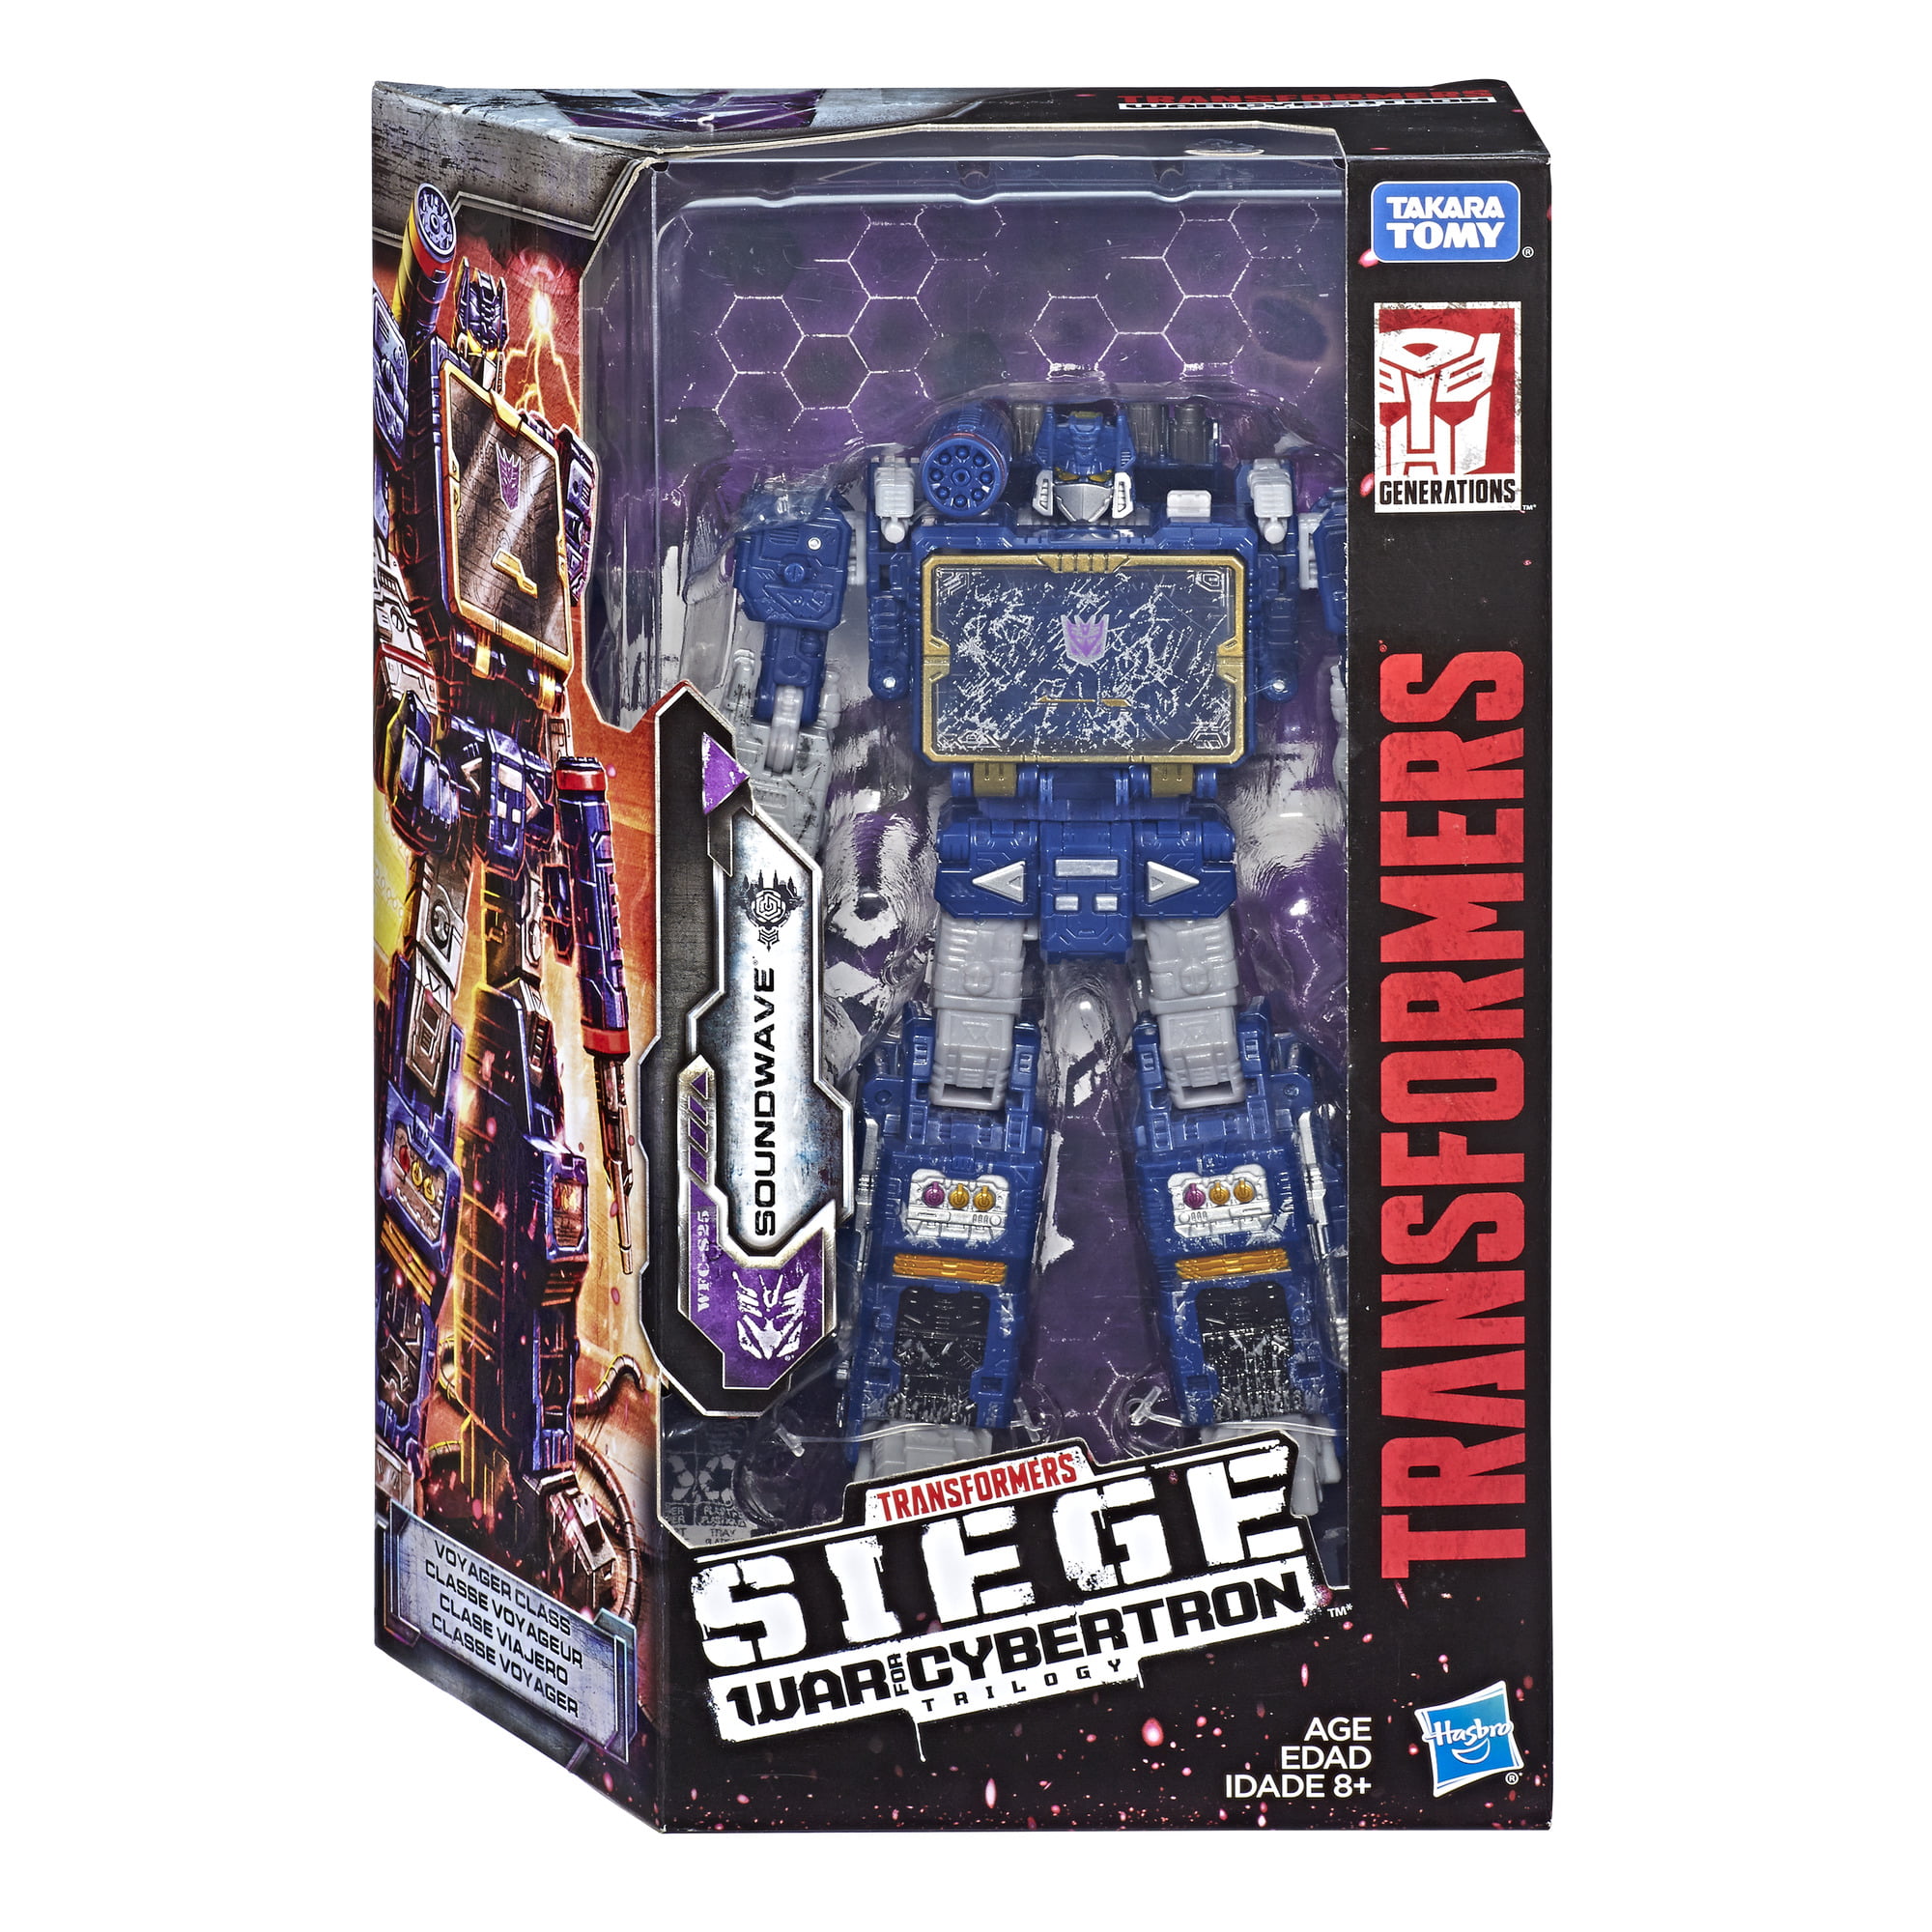 Transformers Siege War of Cybertron Roboterfigur Soundwave WFC-S25 Neu OVP 